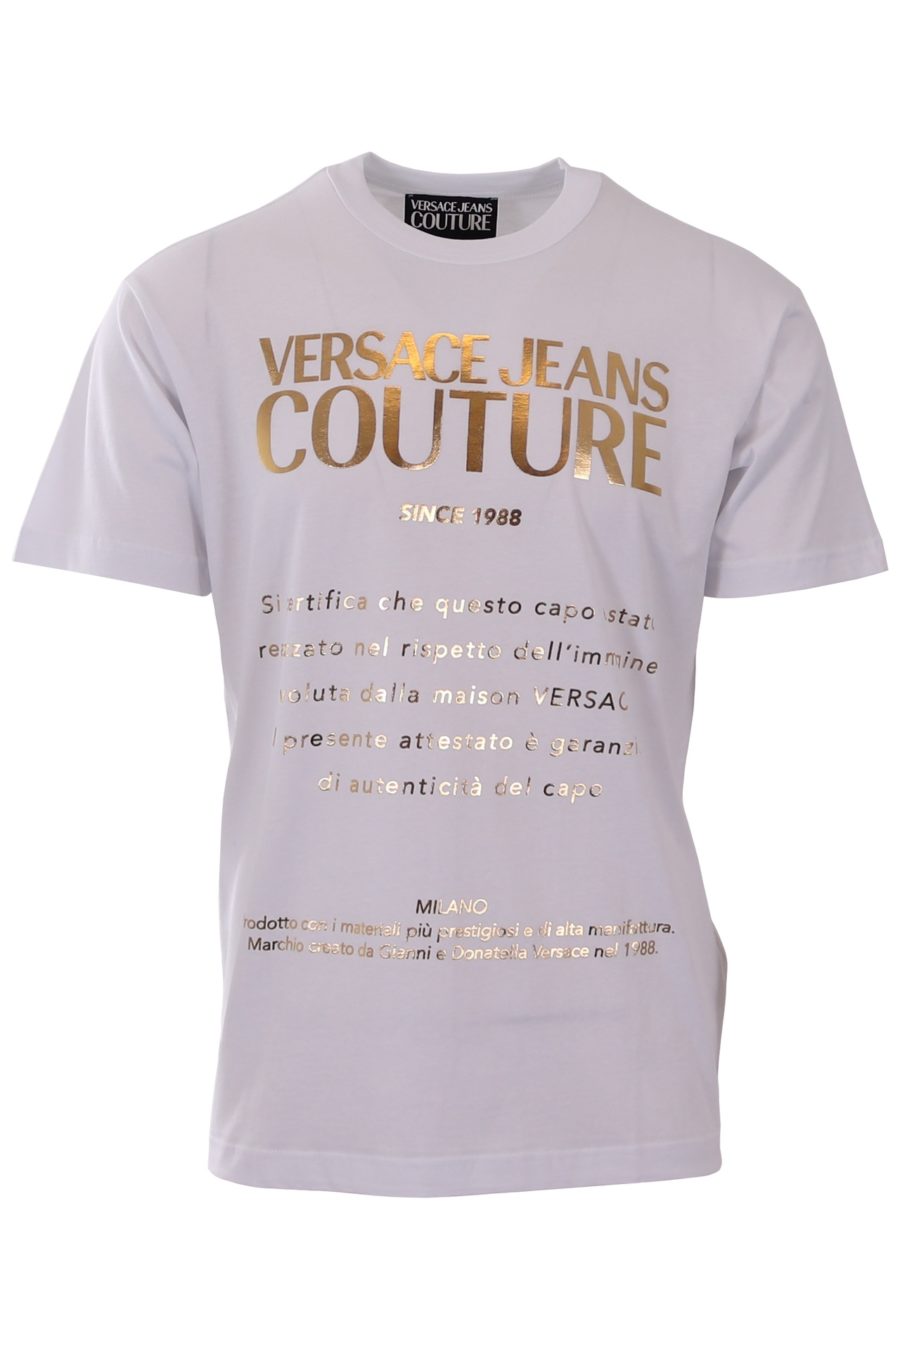 Camiseta regular Versace Jeans Couture blanca con escrito dorado - b9c8a5d643c3b1c66a9889b0ea31a4a540507229